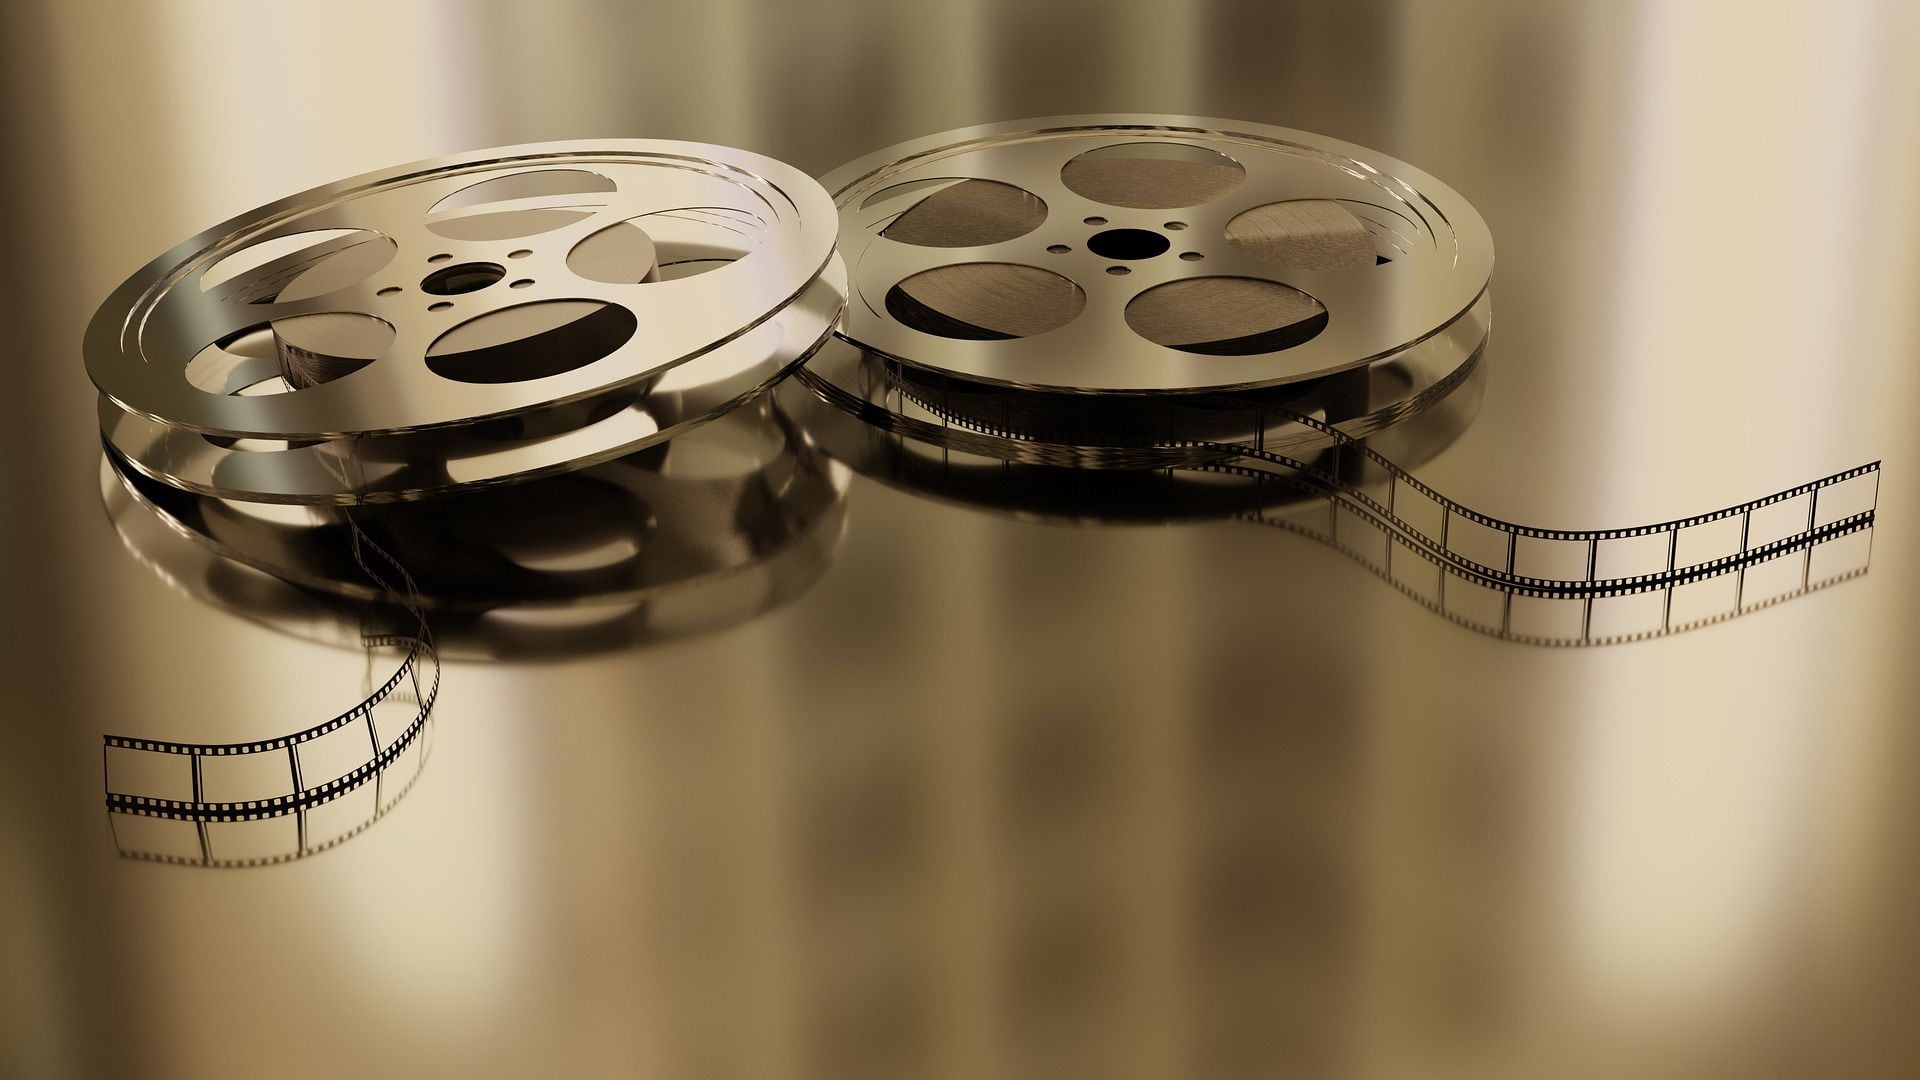 Acessibilidade: Videosaúde lança 13 filmes com audiodescrição, ICICT